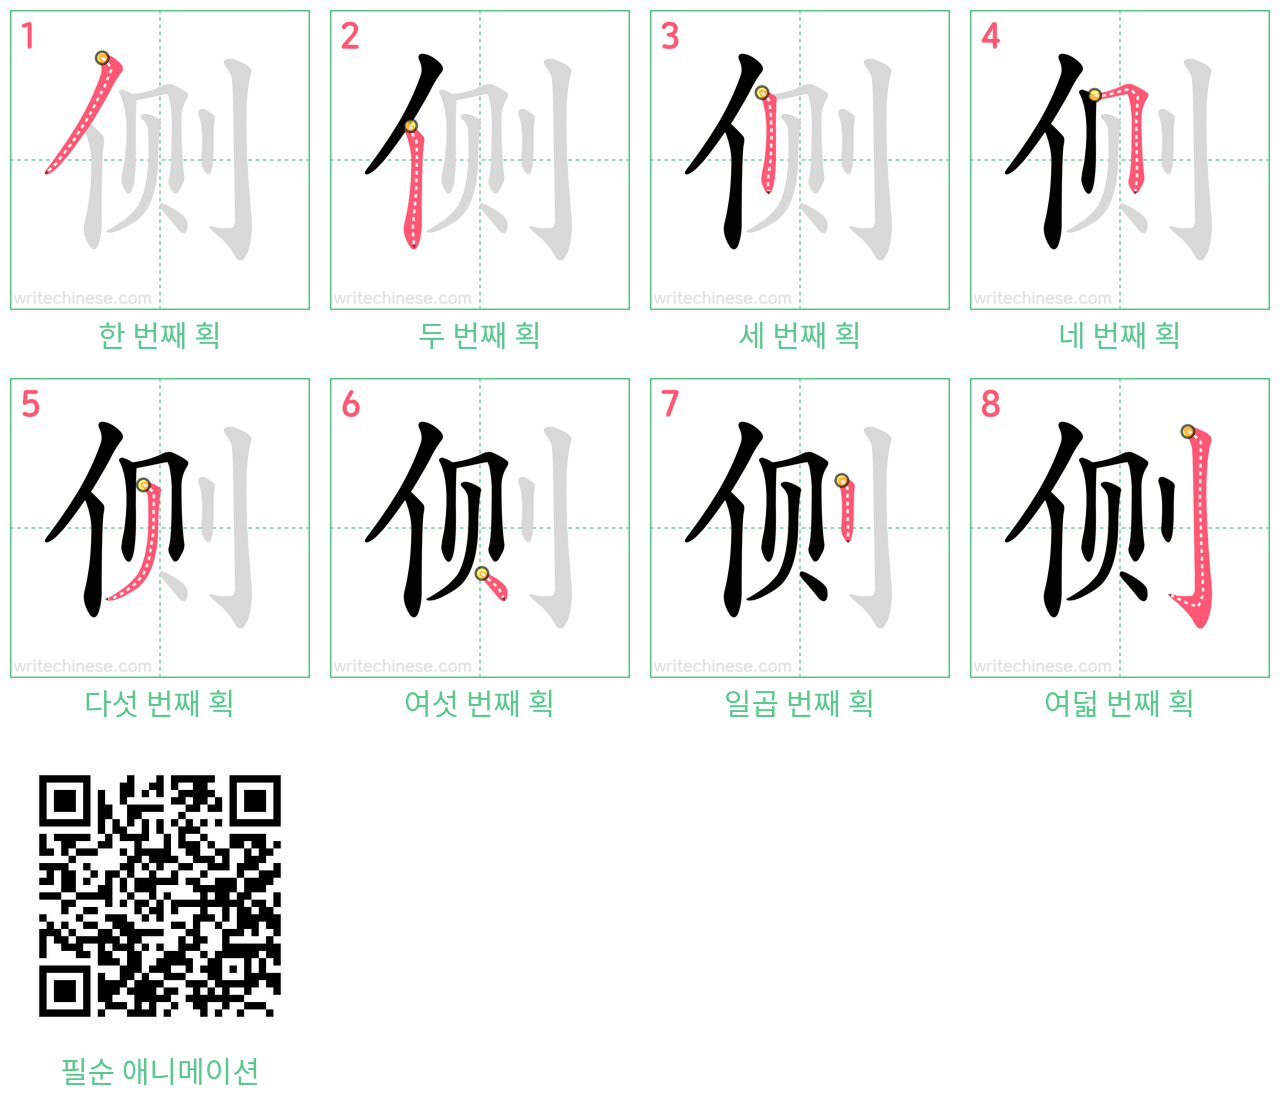 侧 step-by-step stroke order diagrams